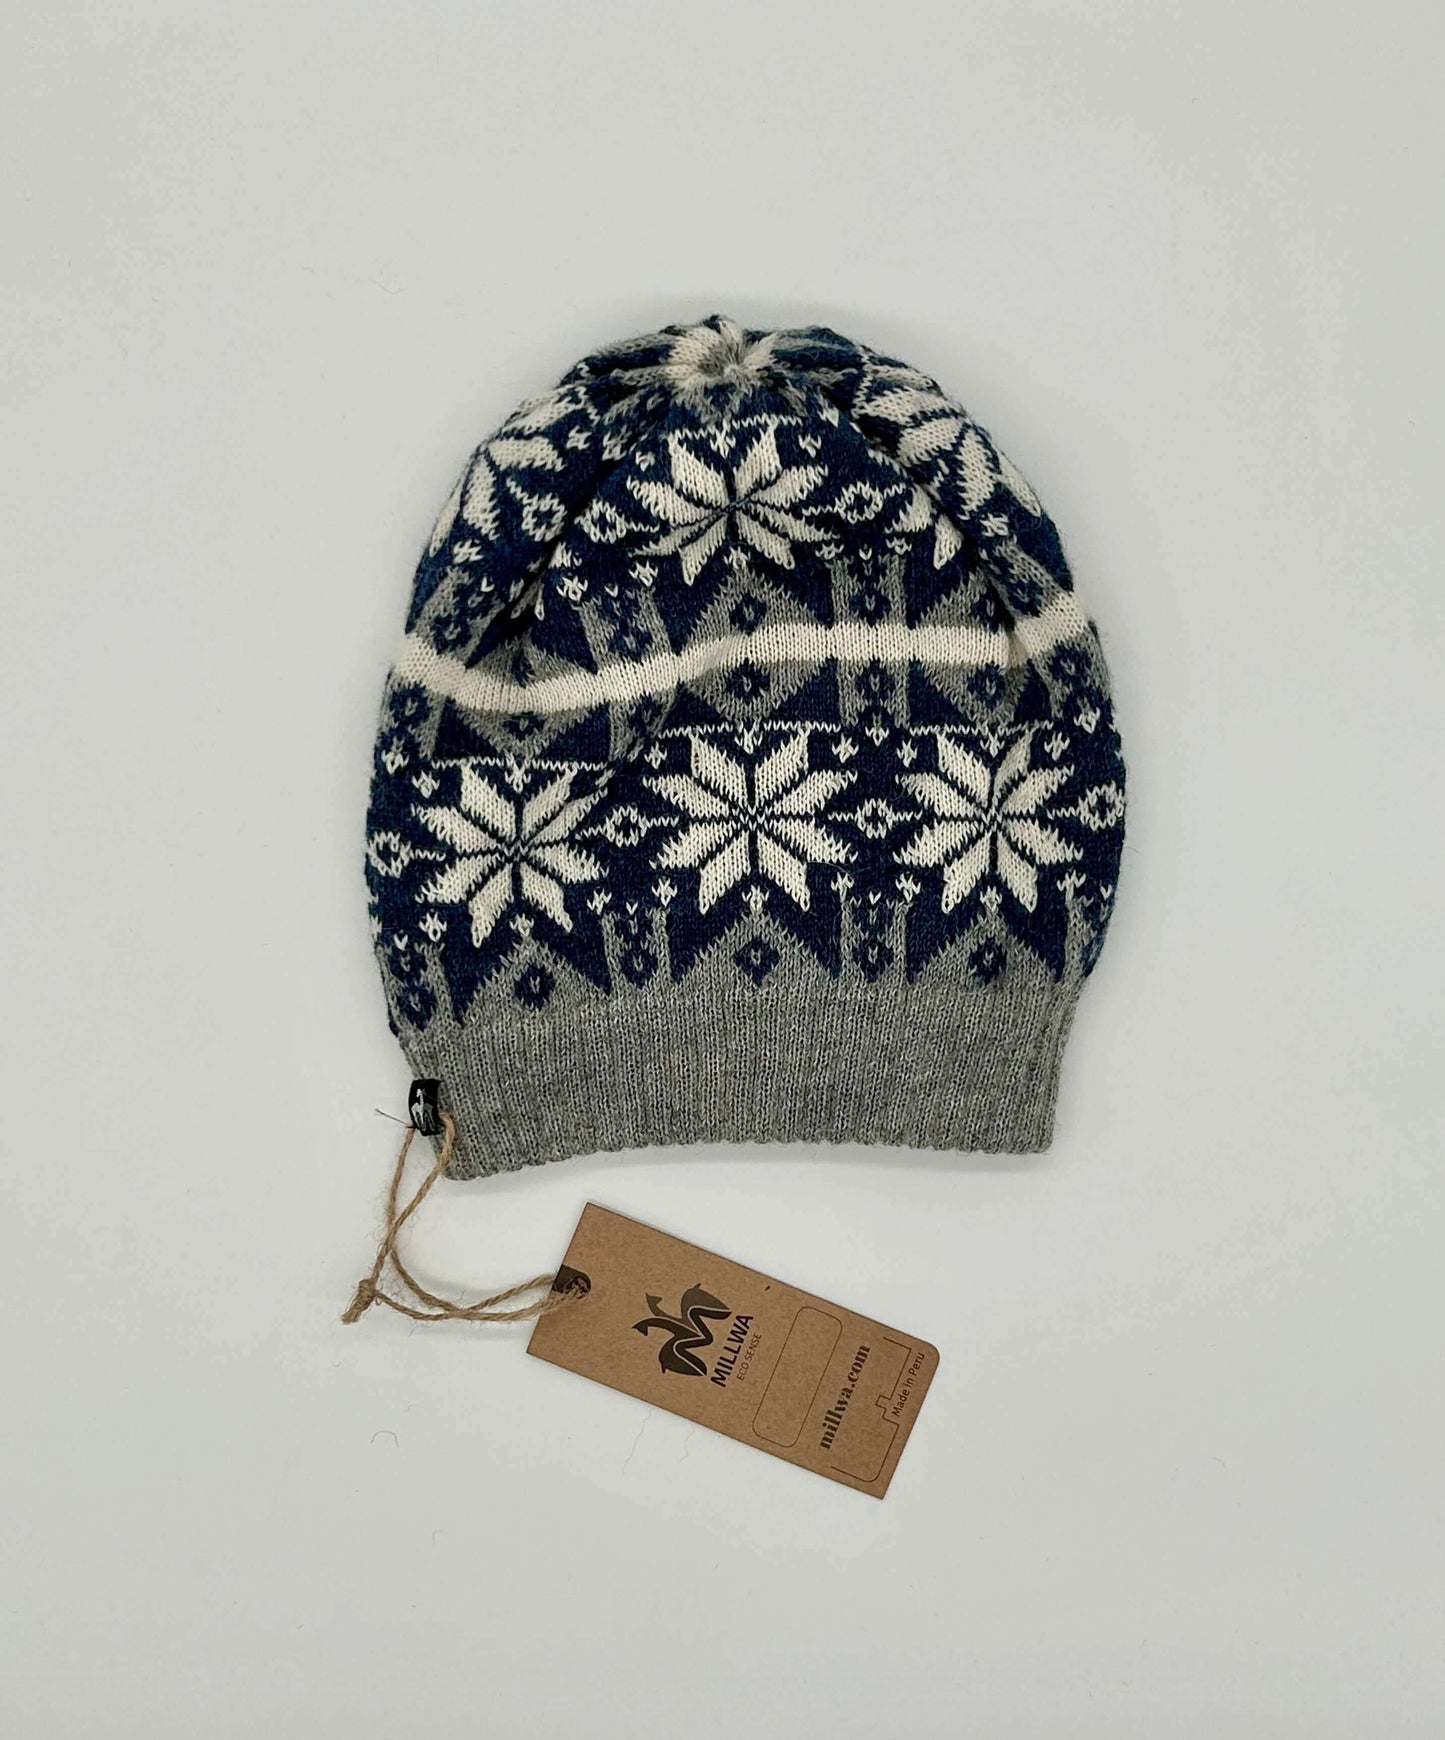 Kuschelweiche Mütze aus 100% Baby-Alpakawolle | Vielfältige Designs in Grau, Weiß, und Navy & Warm durch kalte Tage